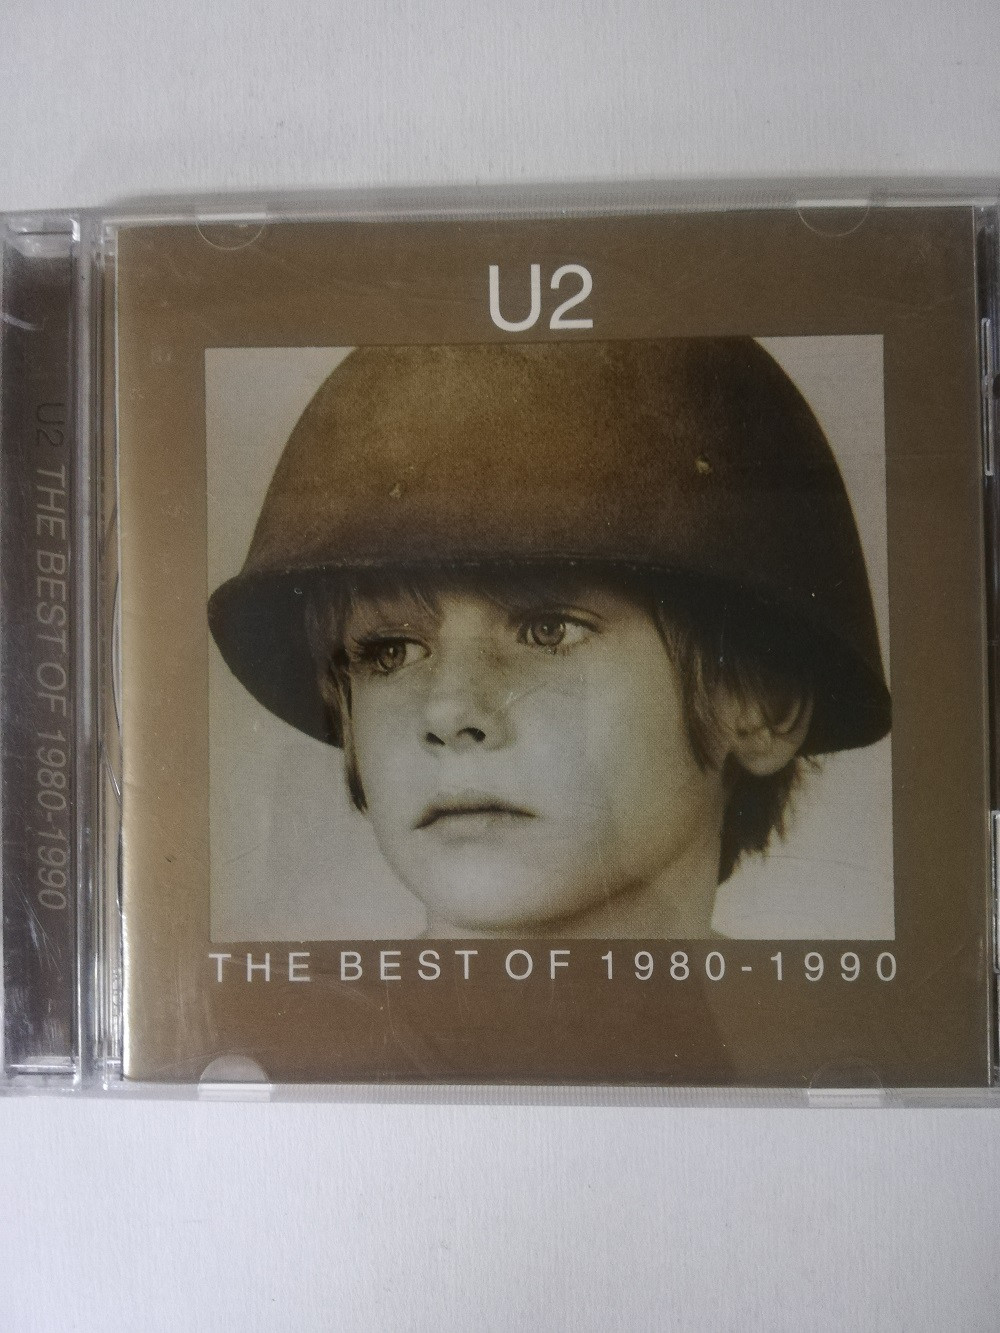 Imagen CD U2 - THE BEST OF 1980-1990 1